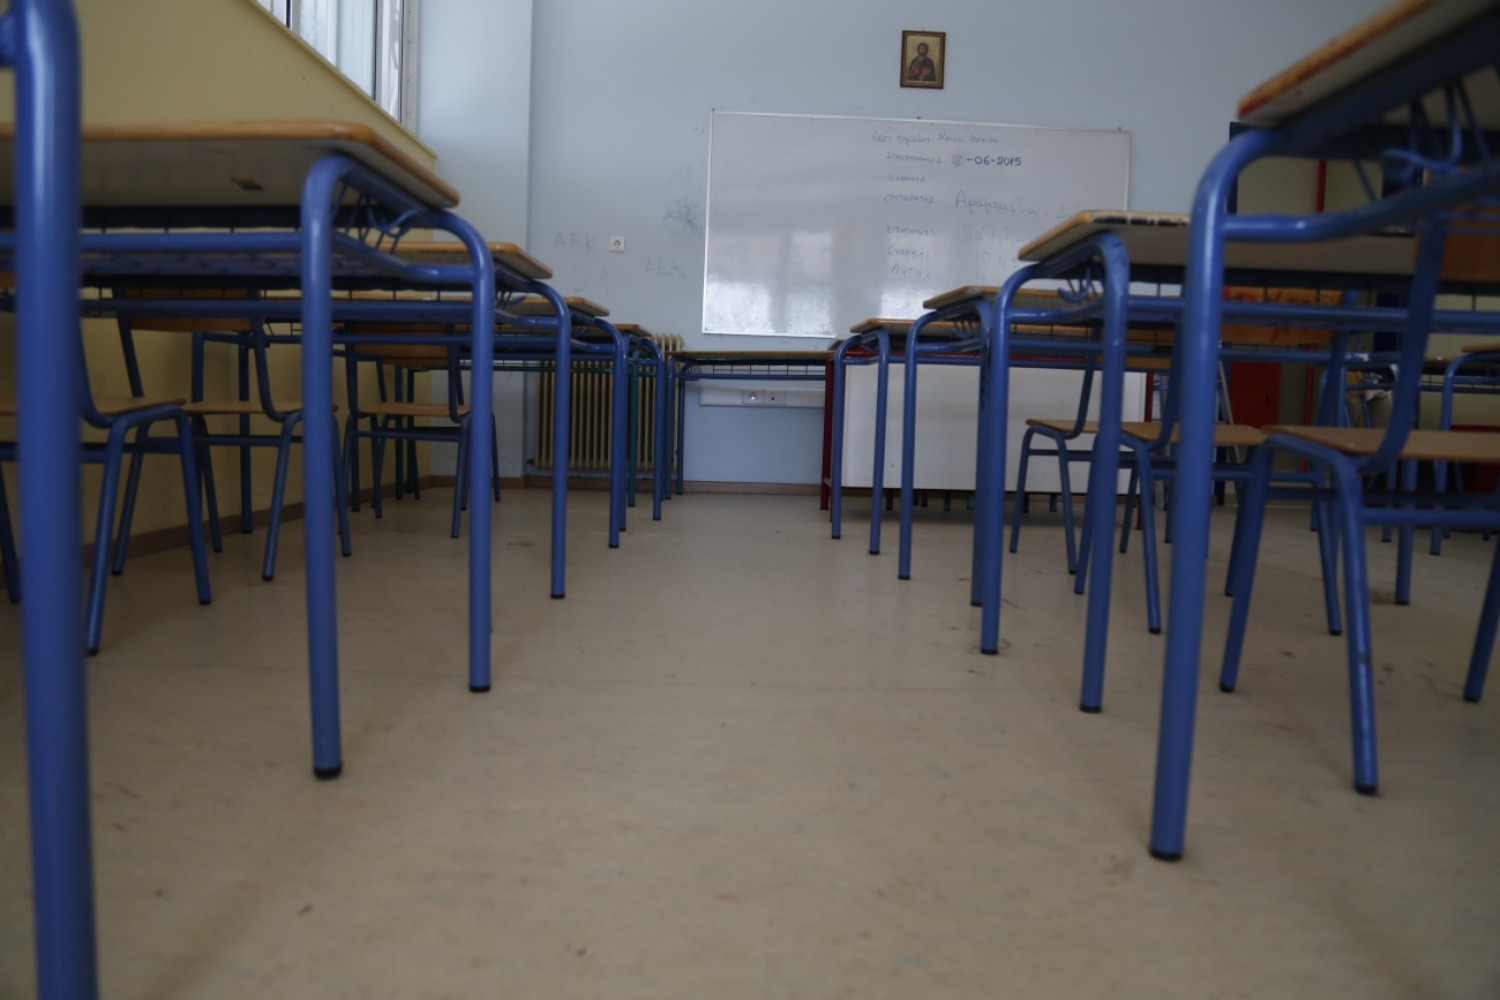 Θεσσαλονίκη: Στην εισαγγελία το περιστατικό της μαθήτριας που έγλειψε την τουαλέτα